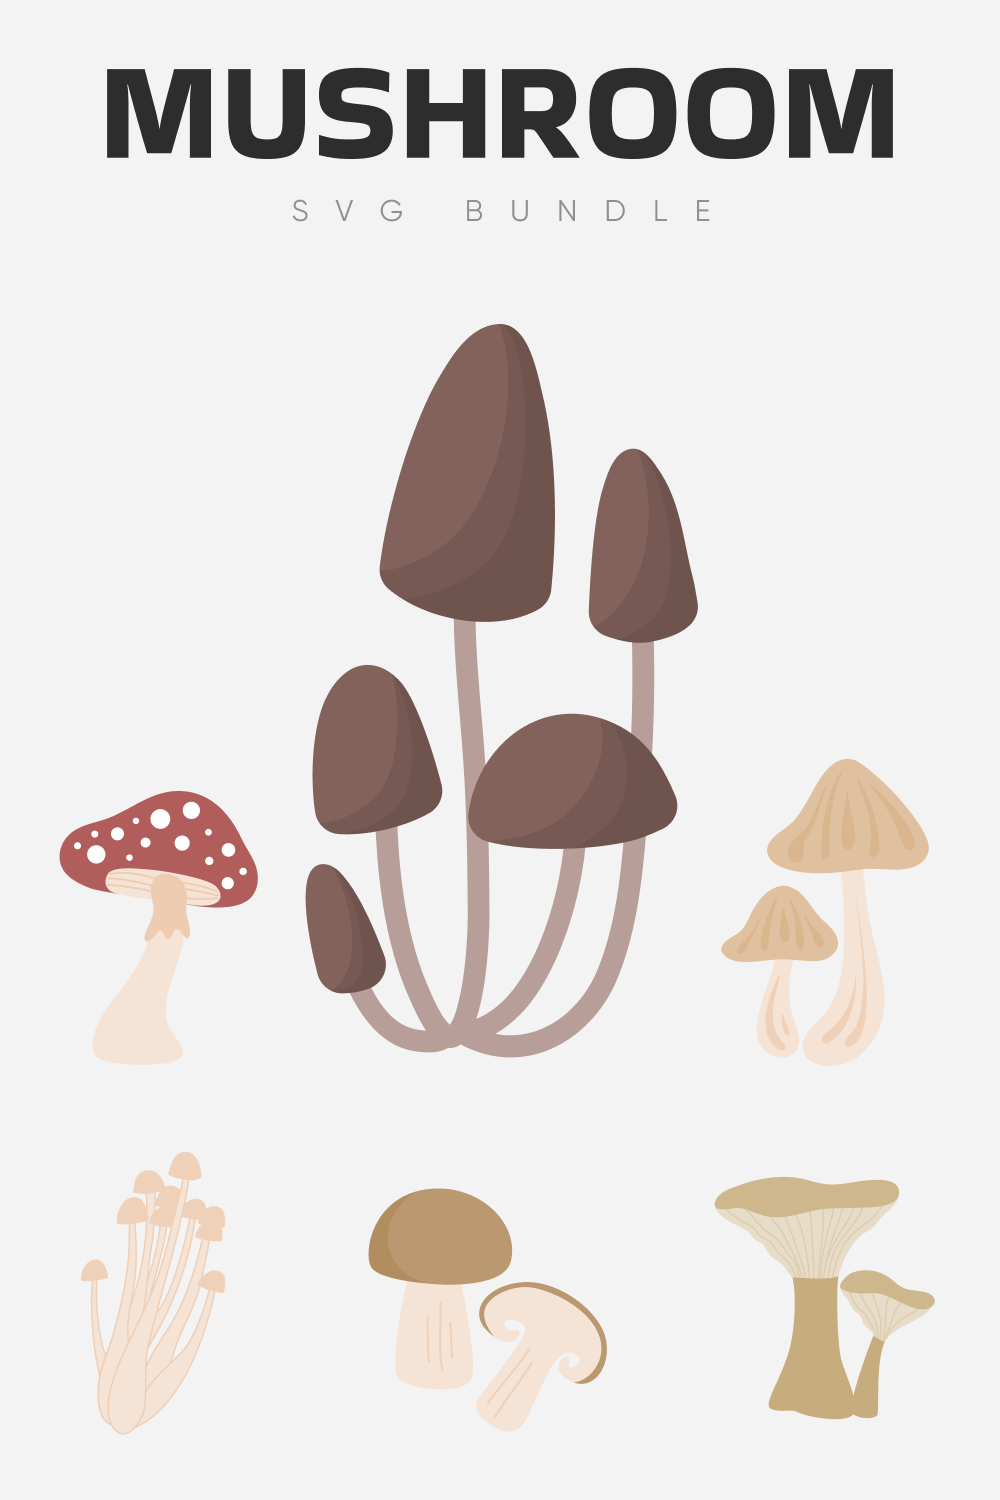 Mushroom SVG Bundle.